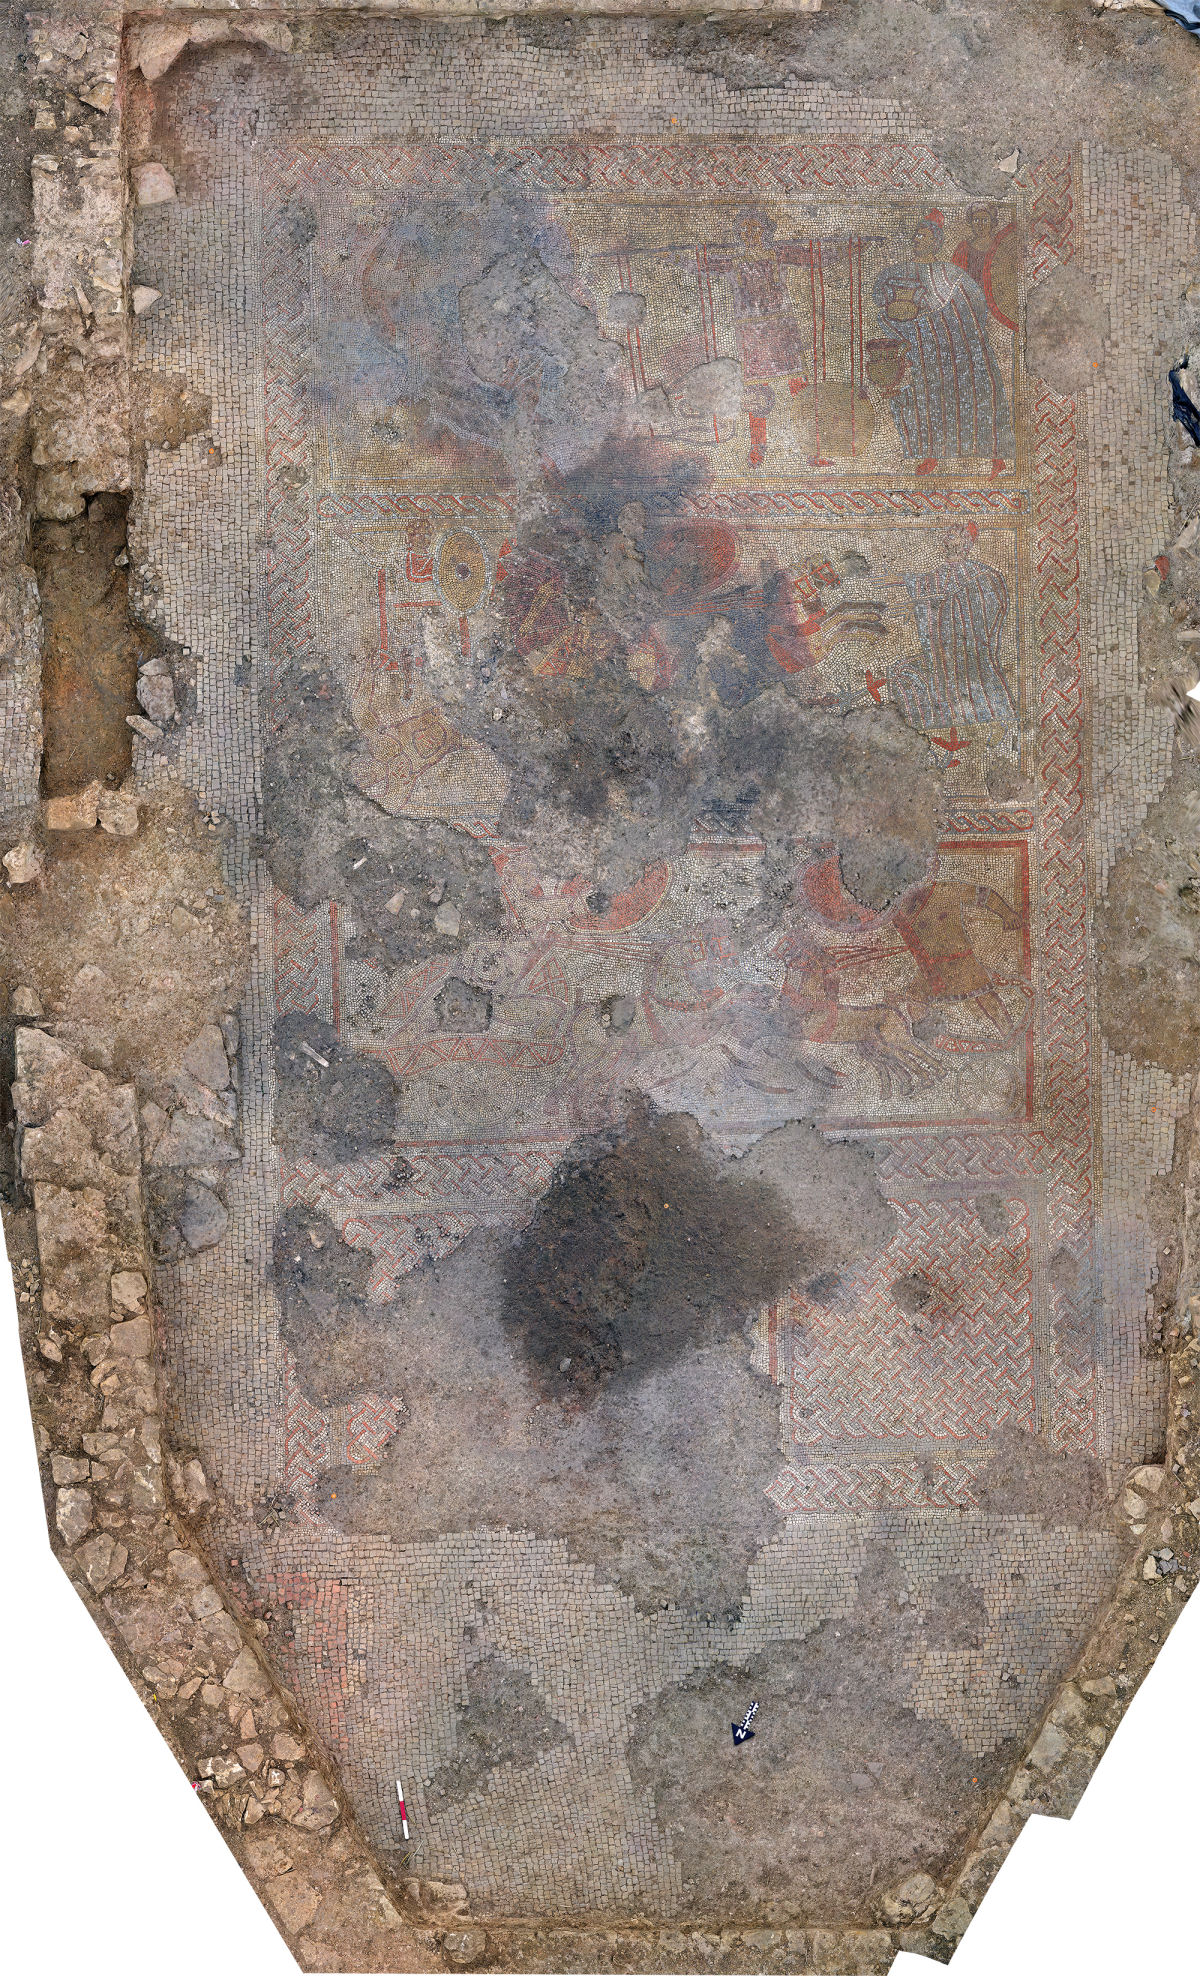 O extraordinário mosaico com cenas da Ilíada e uma vila romana no Reino Unido